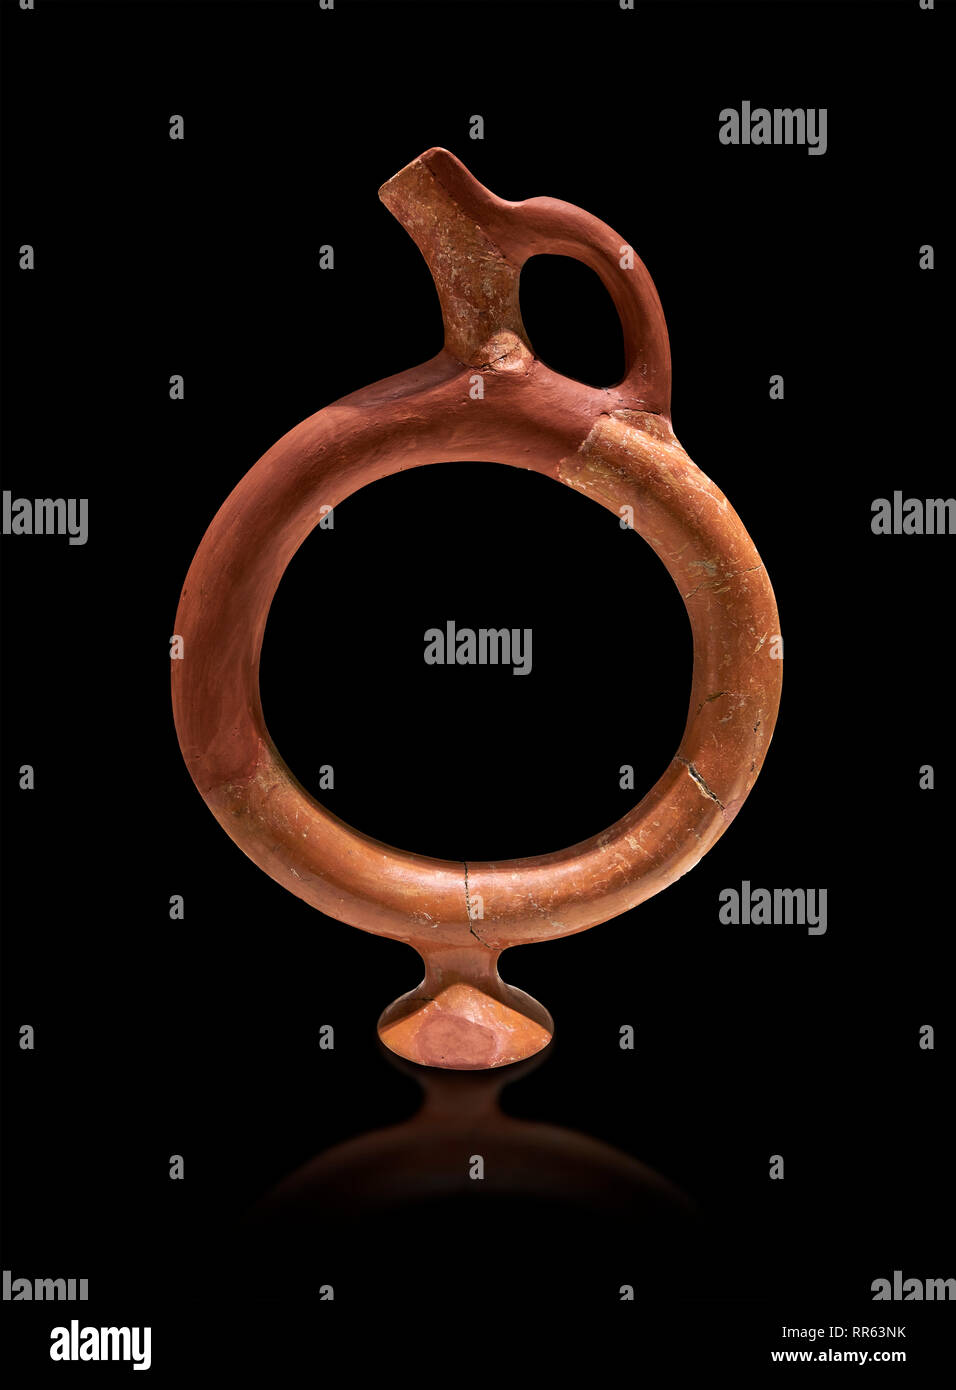 Terre cuite en forme d'anneau Hittite navire - 16e siècle avant J.-C. - Hattusa ( Bogazkoy ) - Musée des civilisations anatoliennes, Ankara, Turquie . Contre le noir ba Banque D'Images